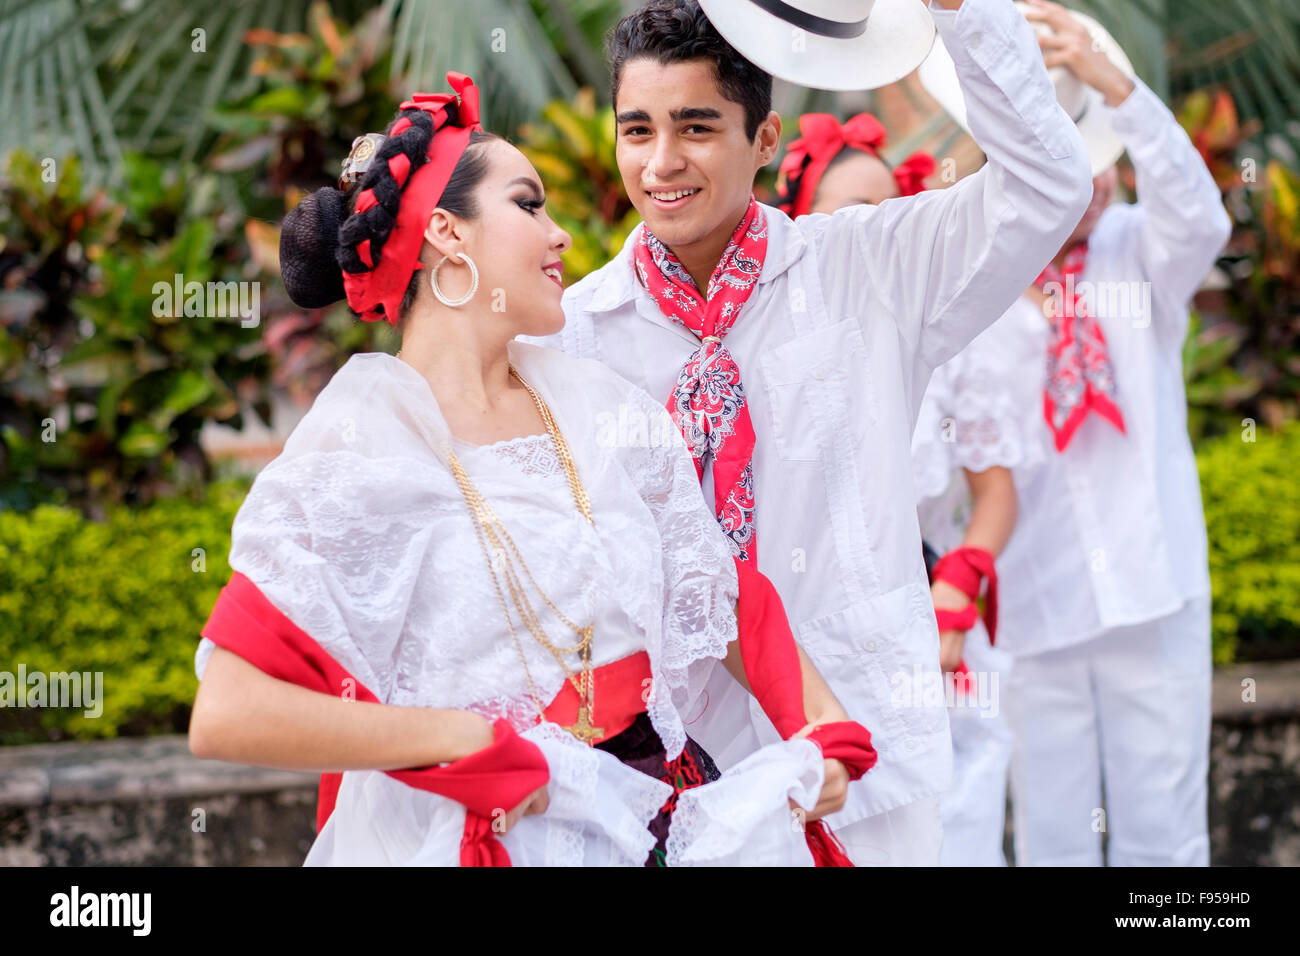 Les jeunes en costumes folkloriques - Puerto Vallarta, Jalisco, Mexique. Les danseurs folkloriques de Xiutla - un groupe de danse mexicaine dans Banque D'Images